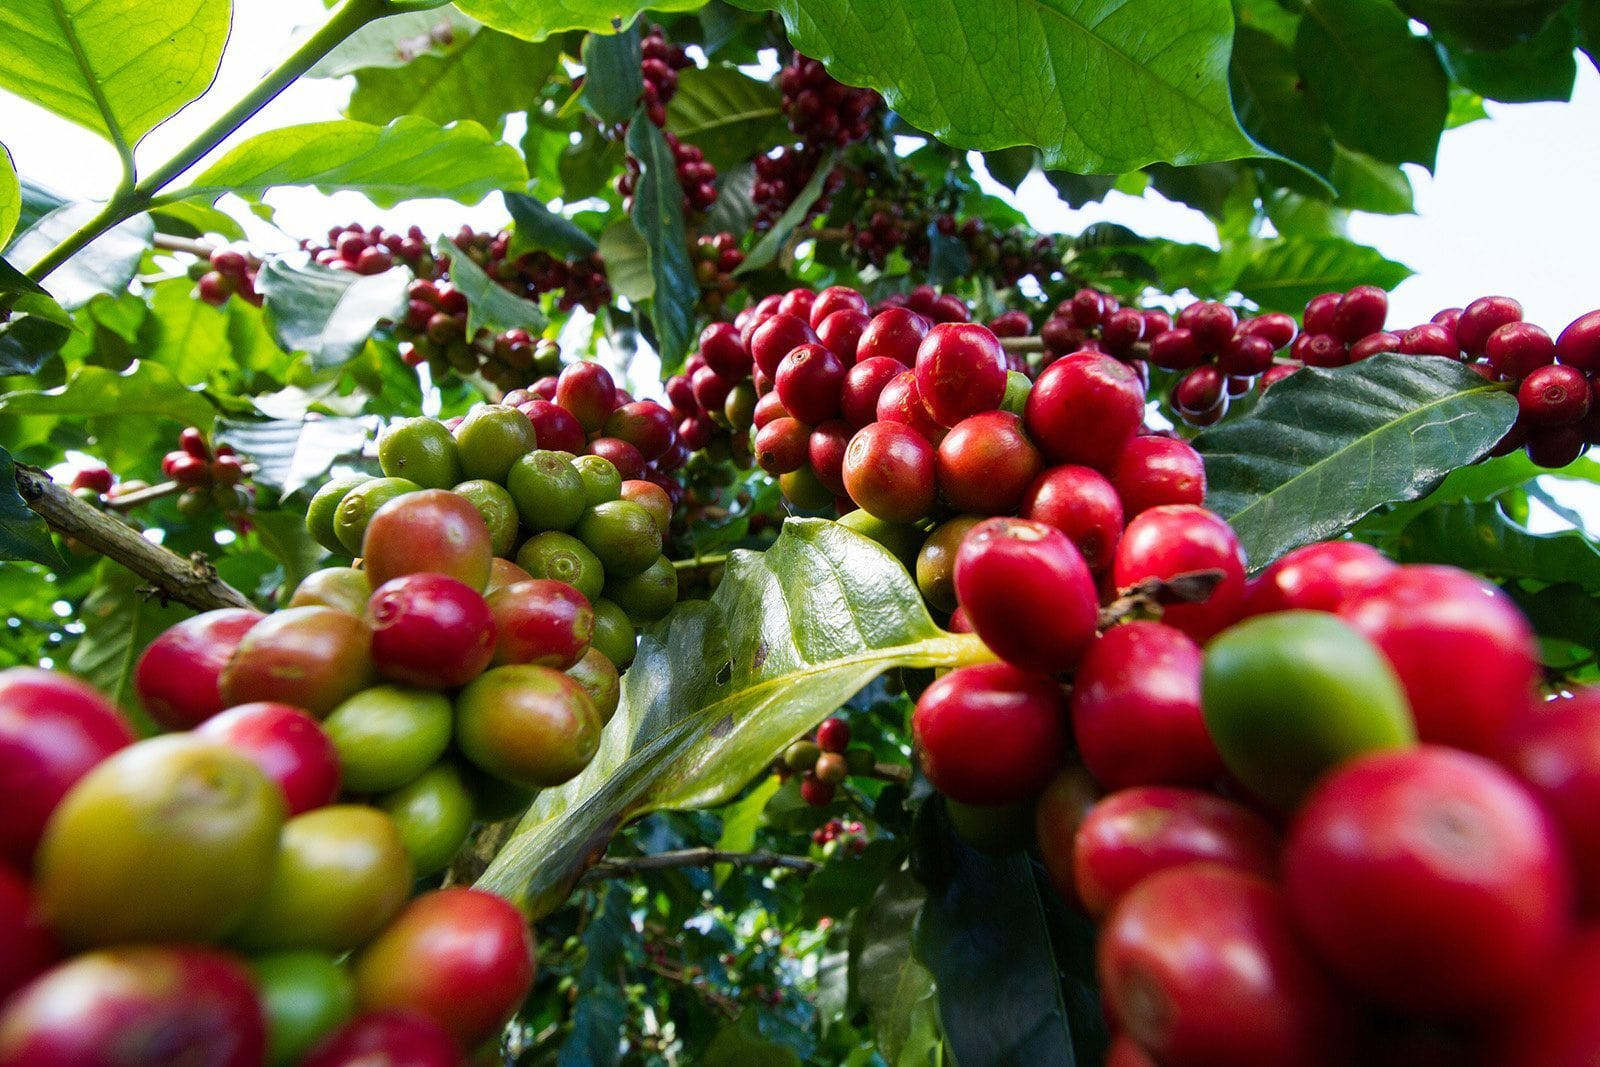 εικόνα σχετικά με το άρθρο της Magic Bean from farm to cup:A Look into the Coffee Industry with Magic Bean